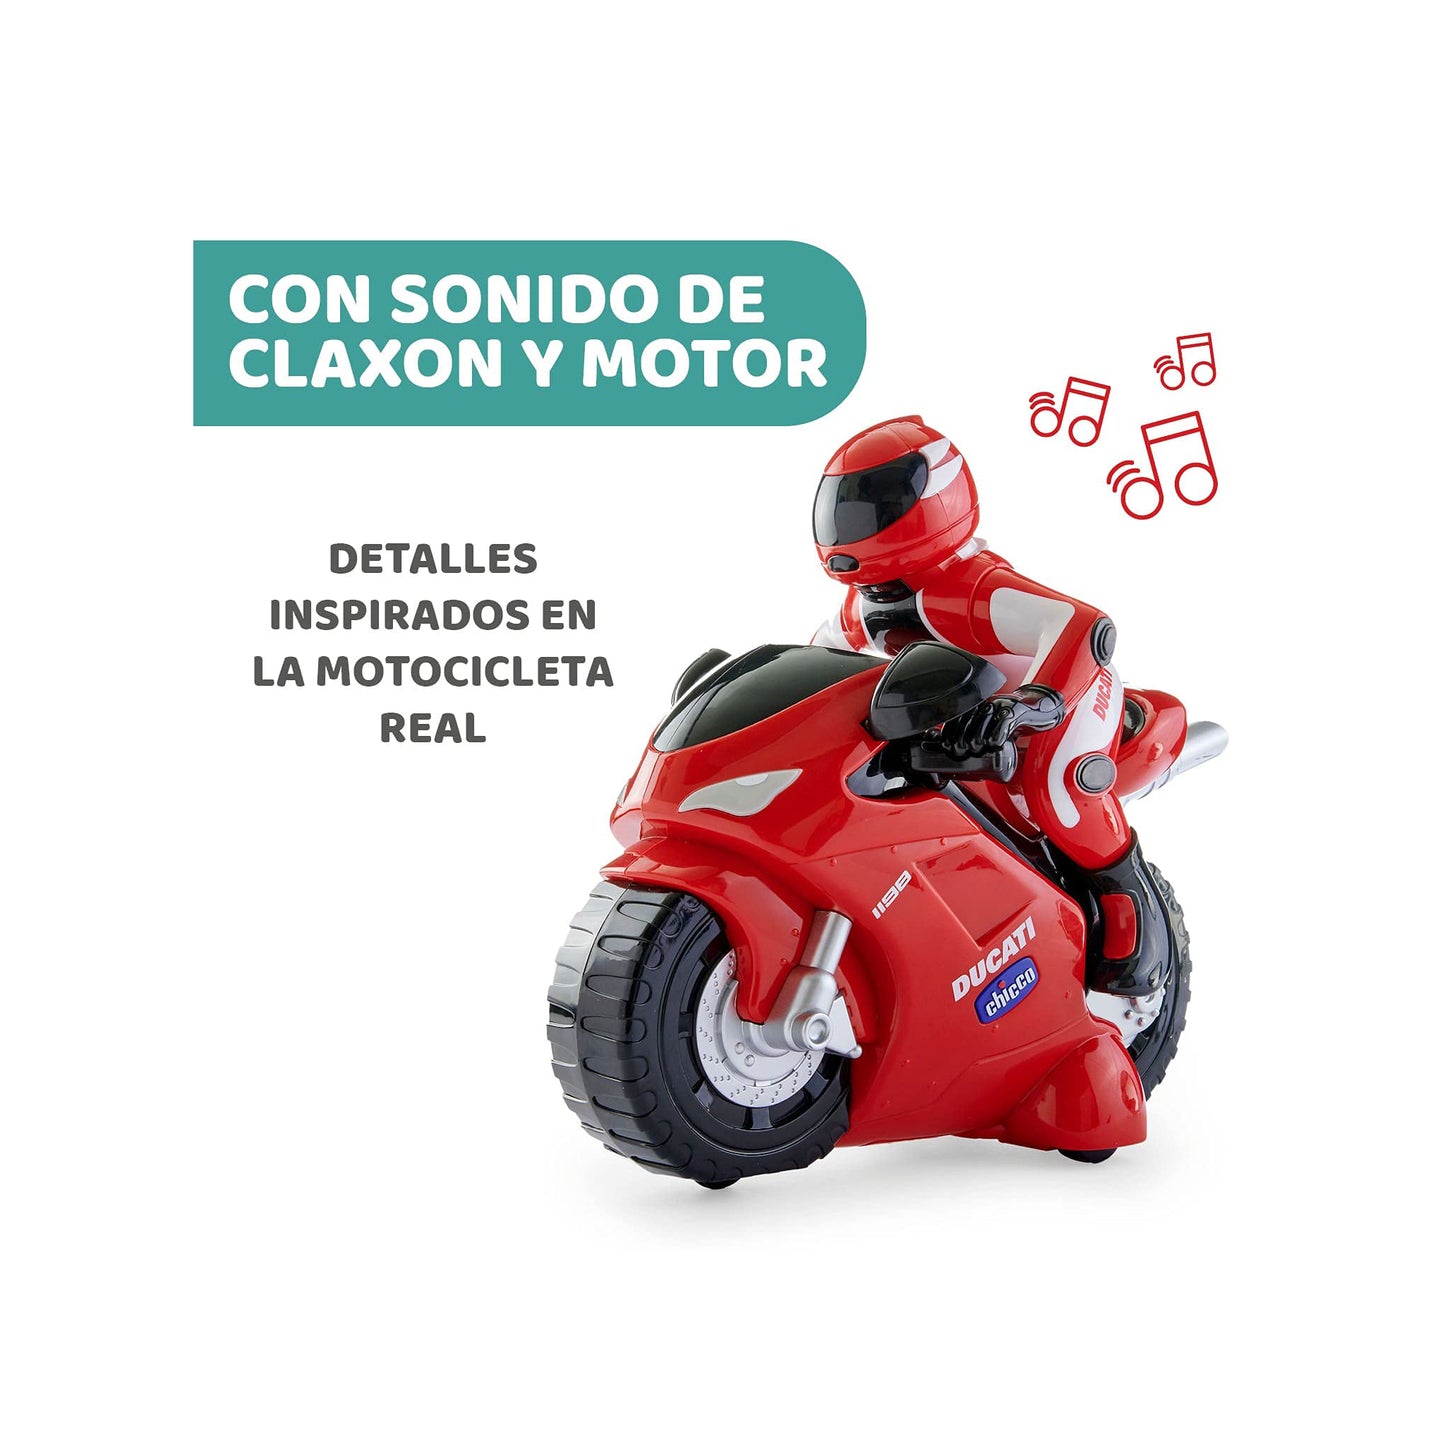 Chicco Ducati 1198 RC Motorrad mit Intuitiver Funkfernsteuerung, Ferngesteuertes Motorrad mit Hupe und Motorgeräuschen - Geschenk für Jungen oder Mädchen ab 2 Jahren, Kinderspielzeug 2-6 Jahre